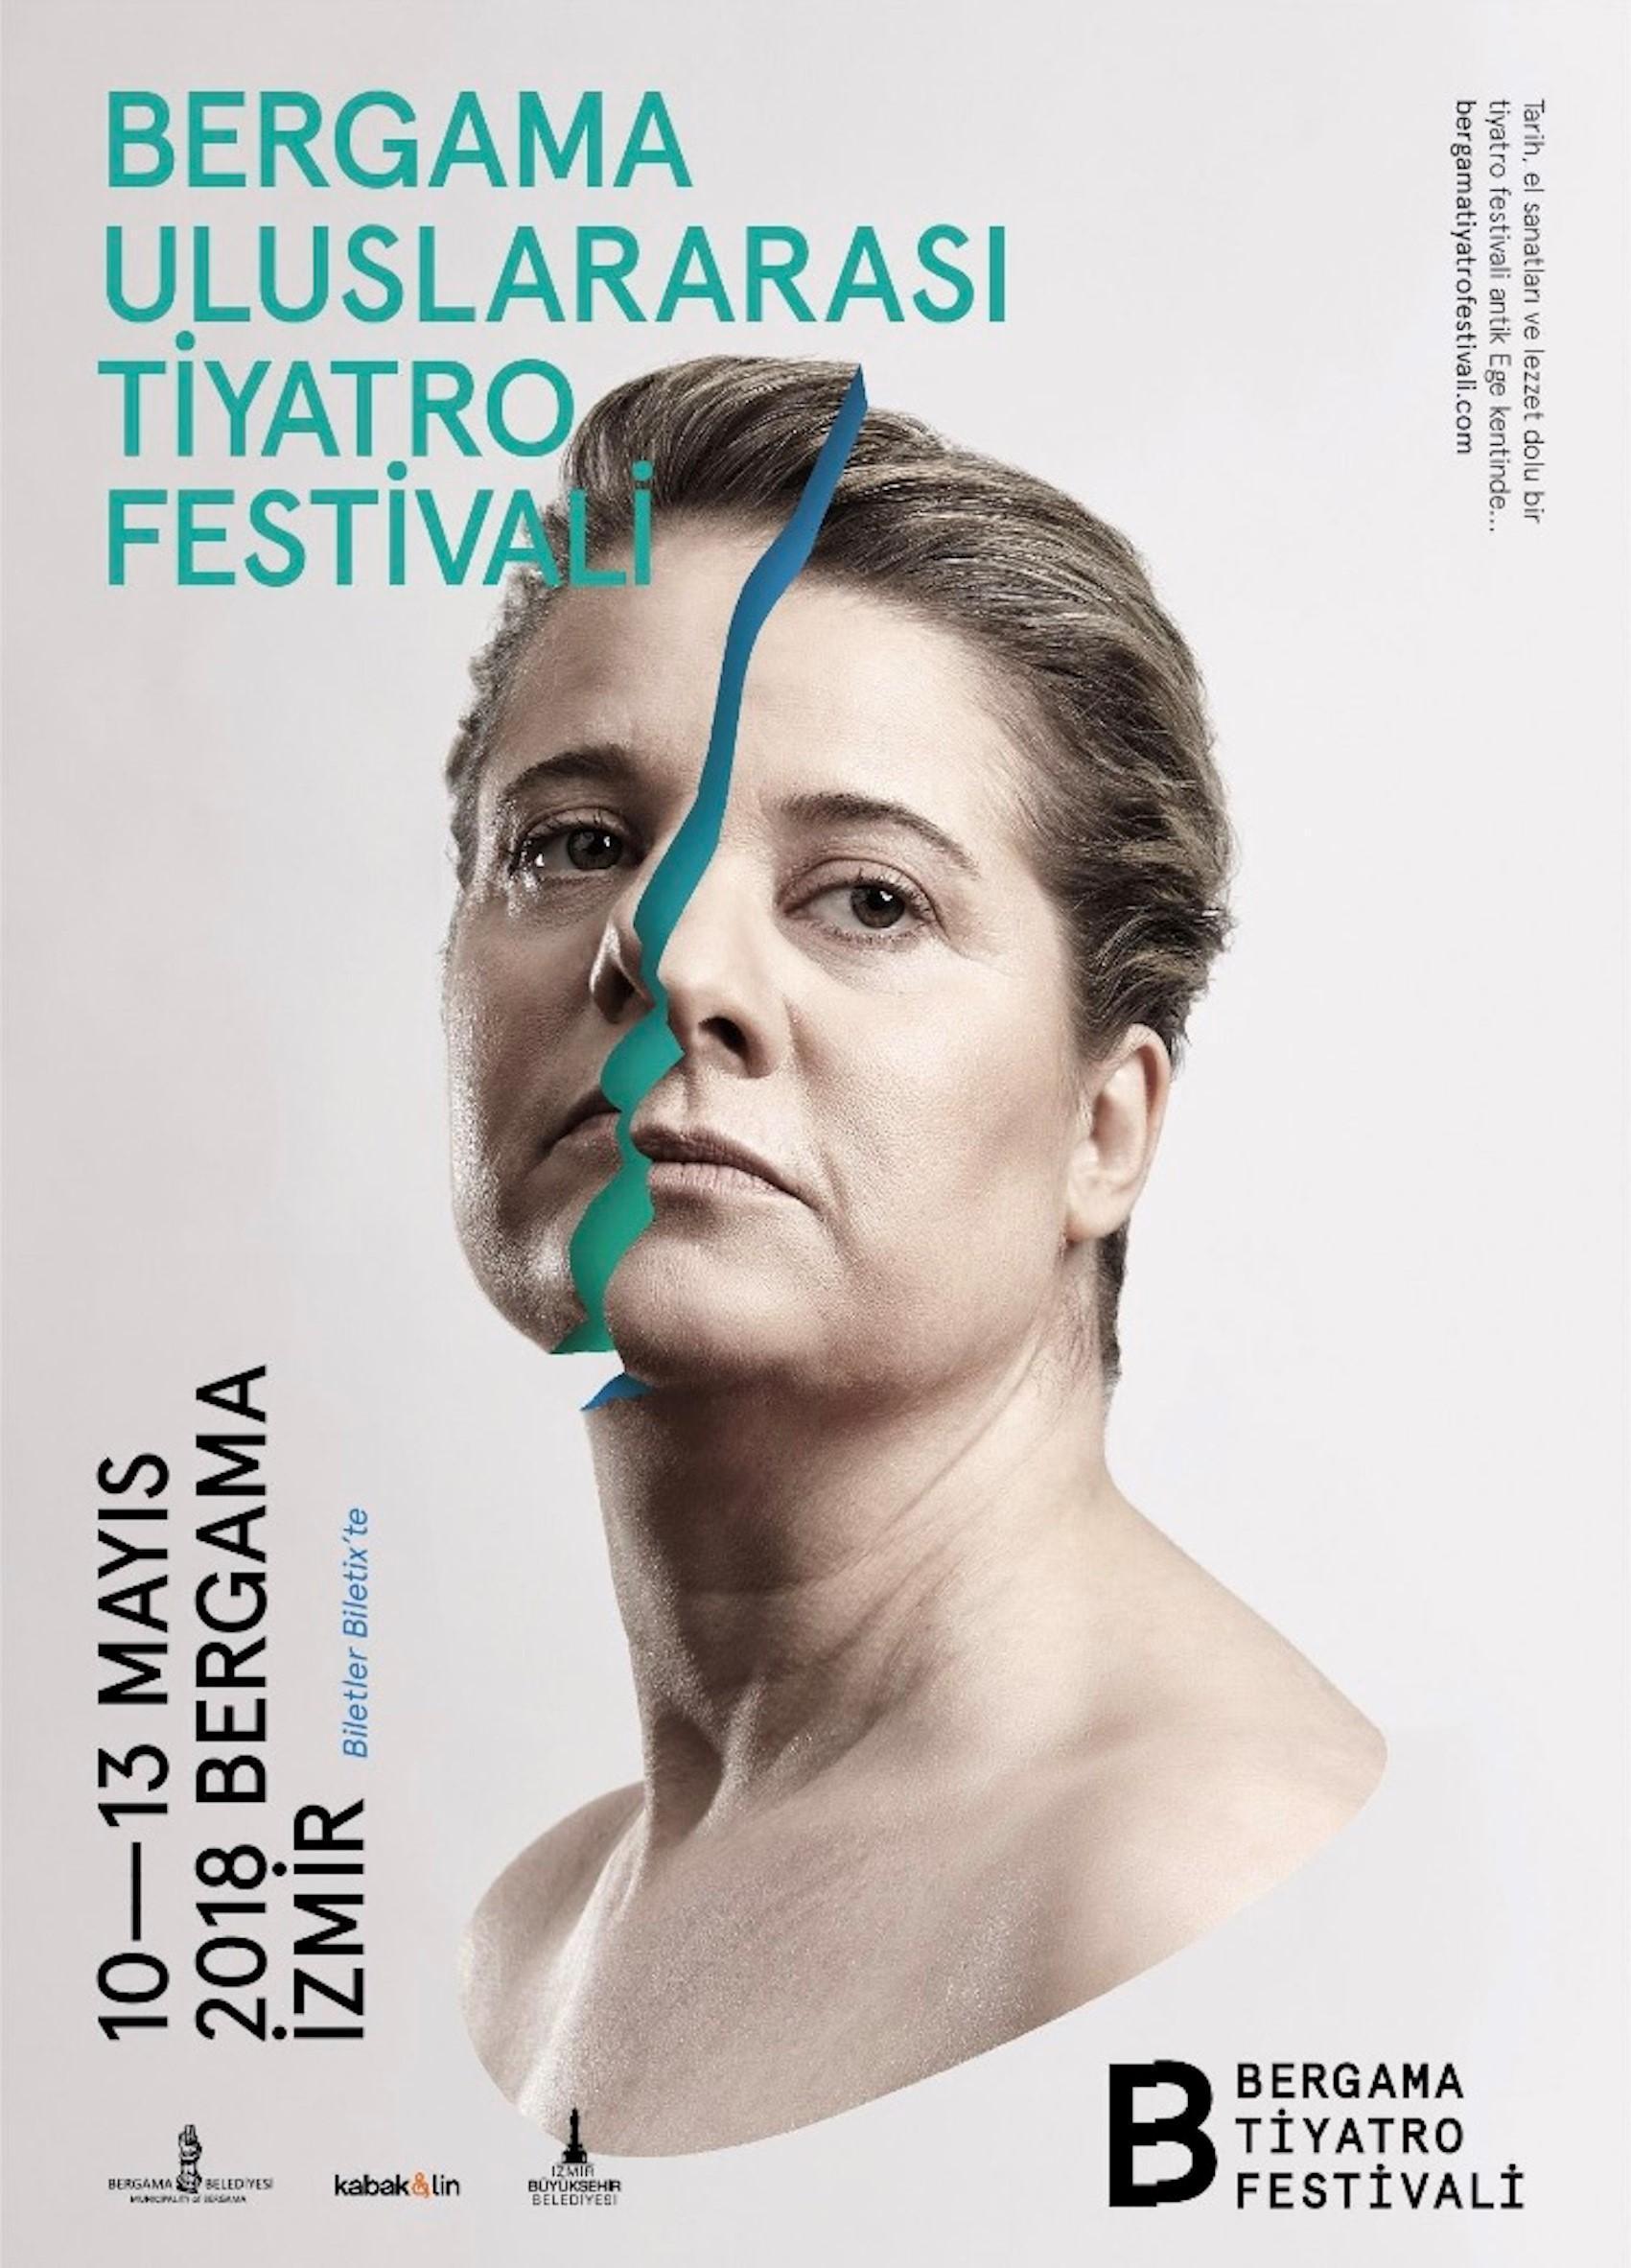 Bergama Uluslararası Tiyatro Festivali sanatseverlerle buluşacak